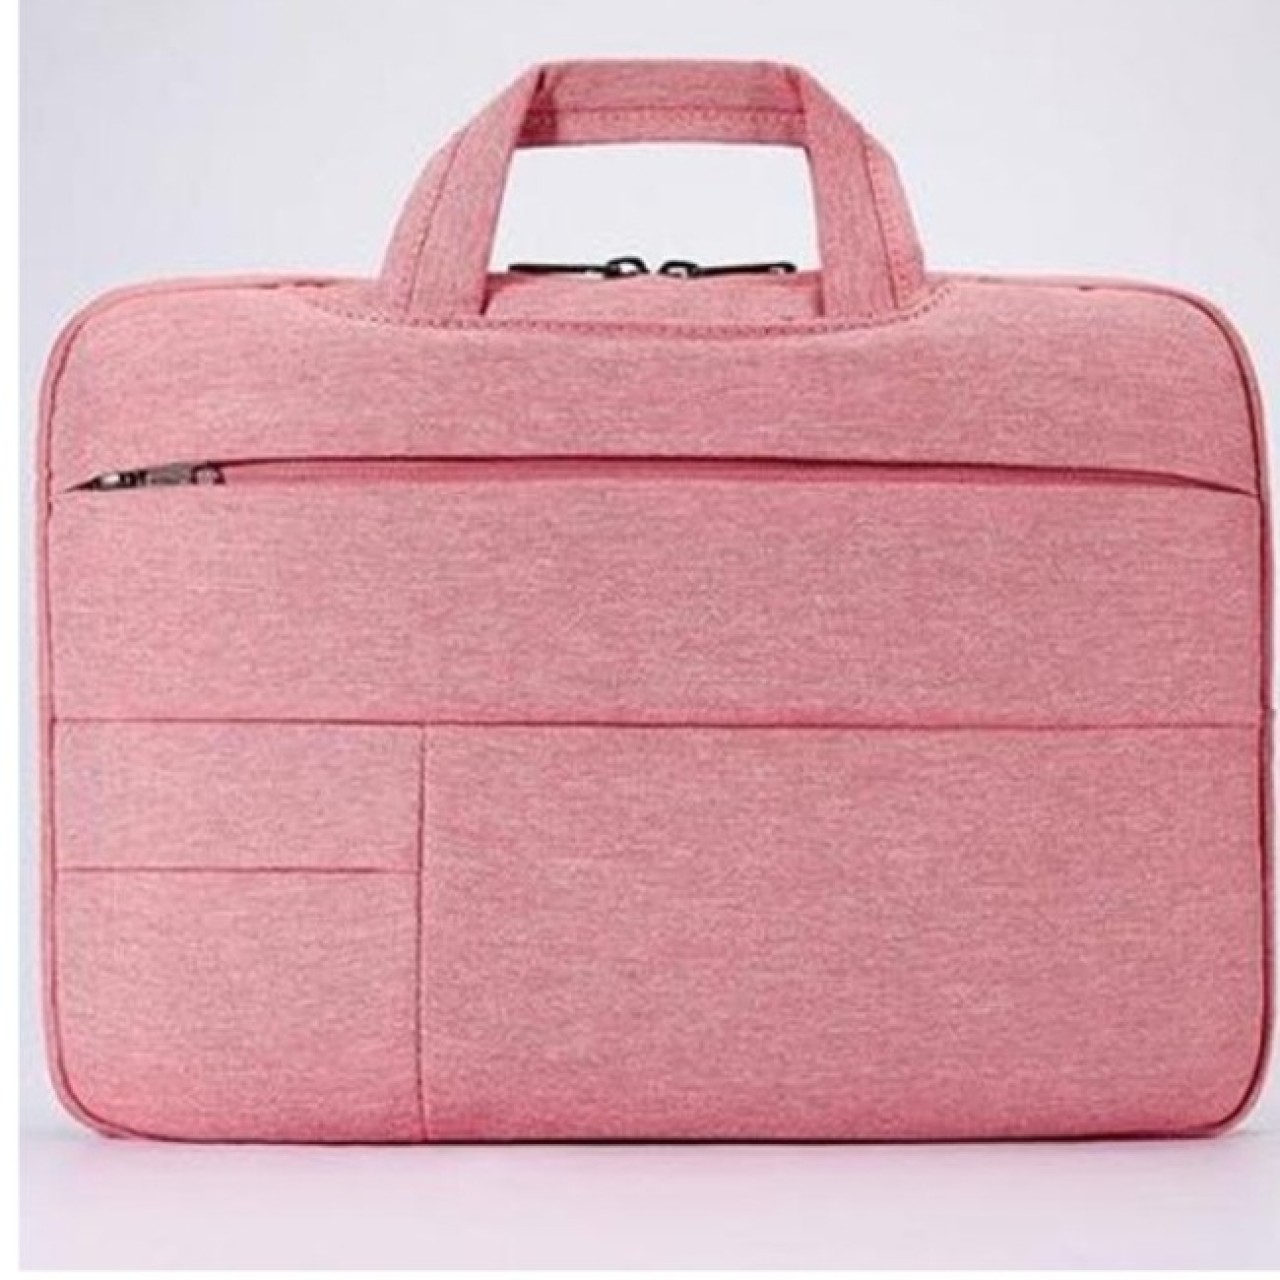 Laptop Slim Bag 13.3 Inch - Pink